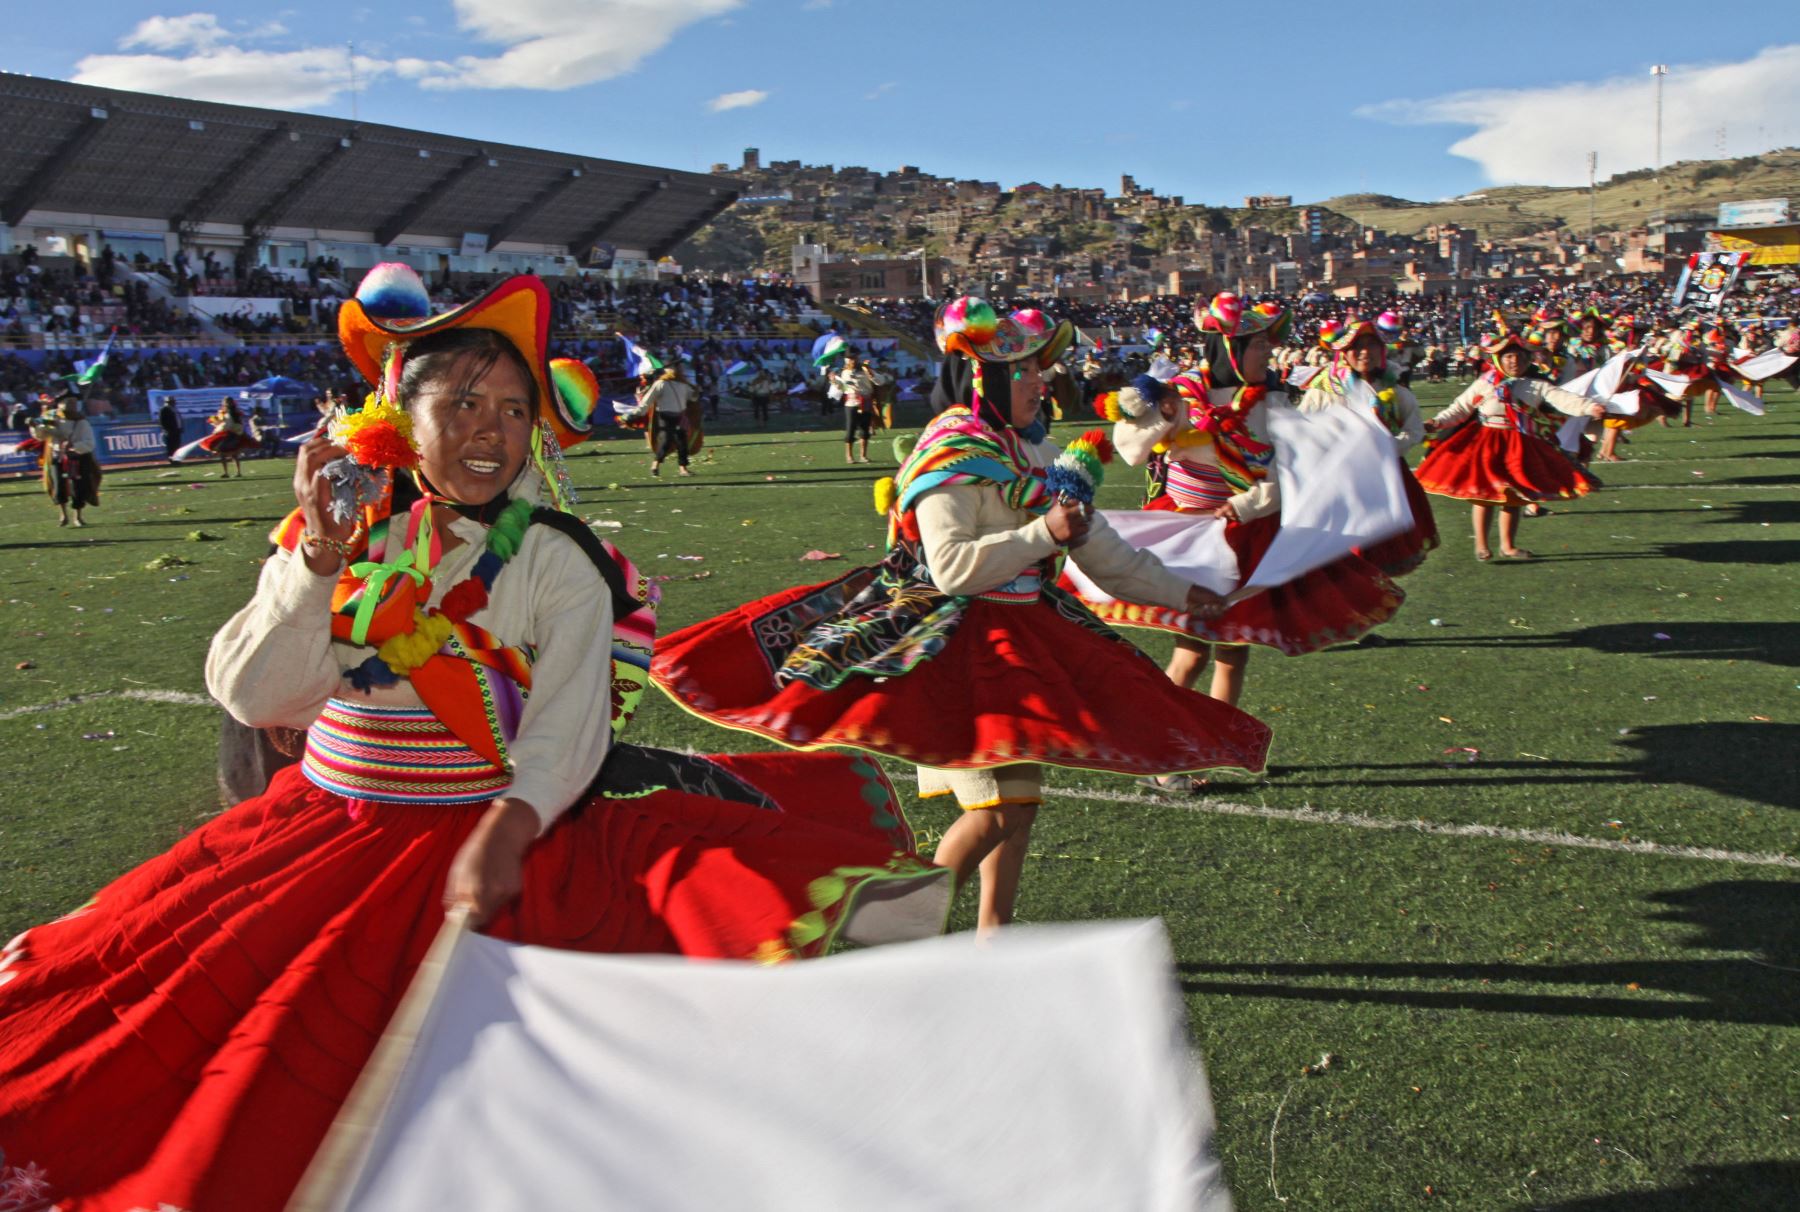 La festividad de la Virgen de la Candelaria, en la ciudad de Puno, tiene hoy una de sus principales actividades tradicionales llenas de colorido y alegría: el concurso de danzas, trajes típicos y autóctonos que convierten a Puno en la "Capital del Folclor Peruano". ANDINA/Difusión